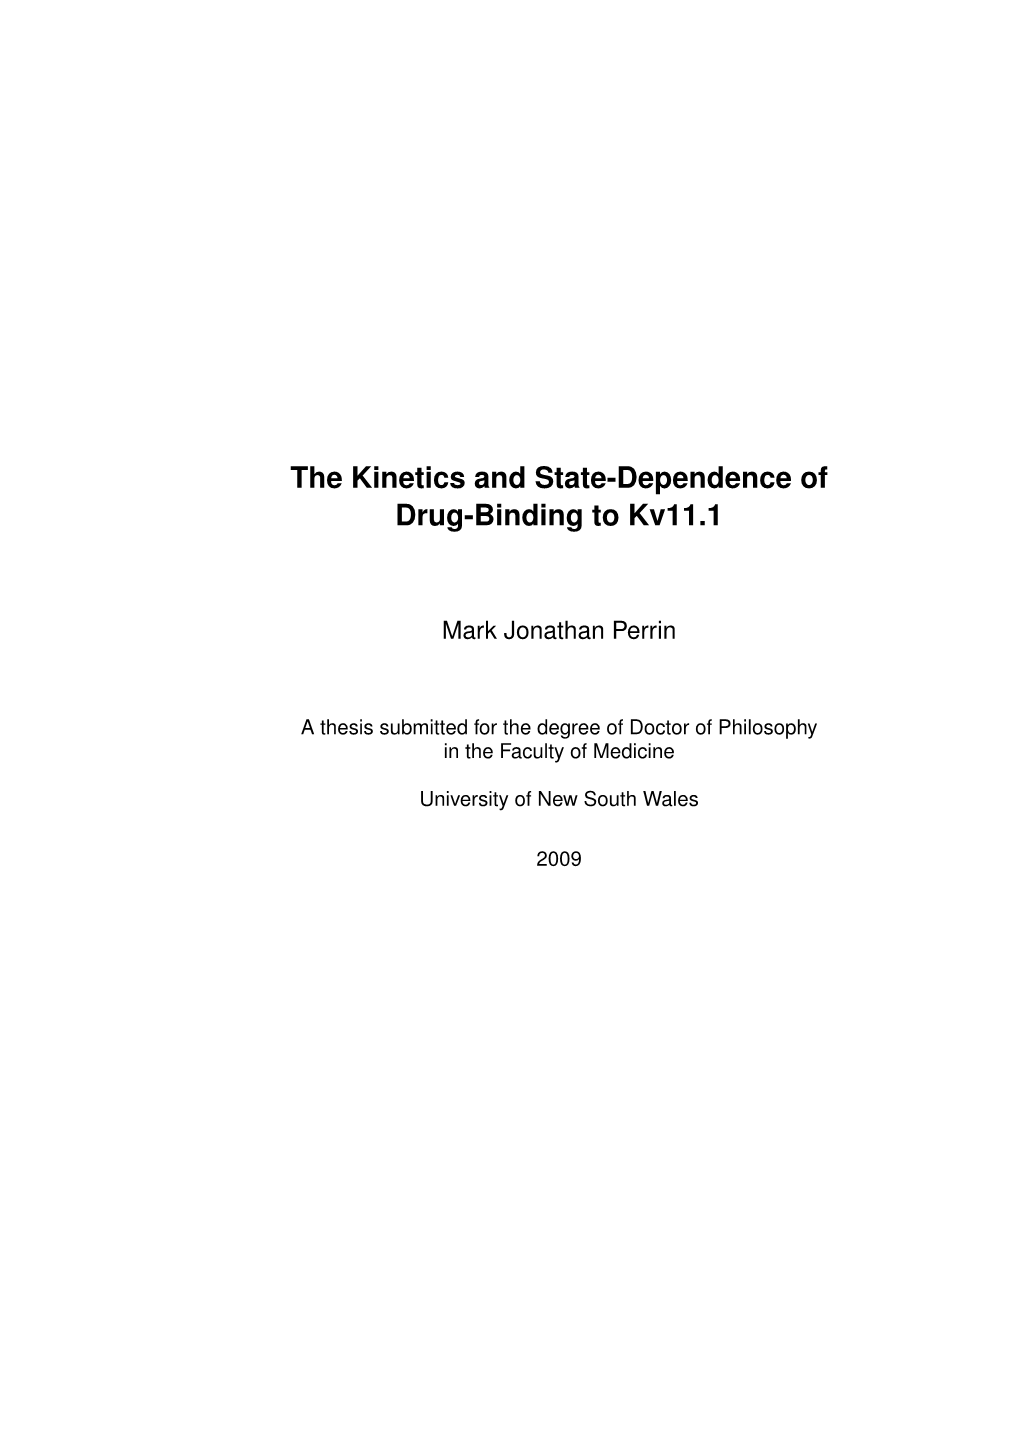 The Kinetics and State-Dependence of Drug-Binding to Kv11.1